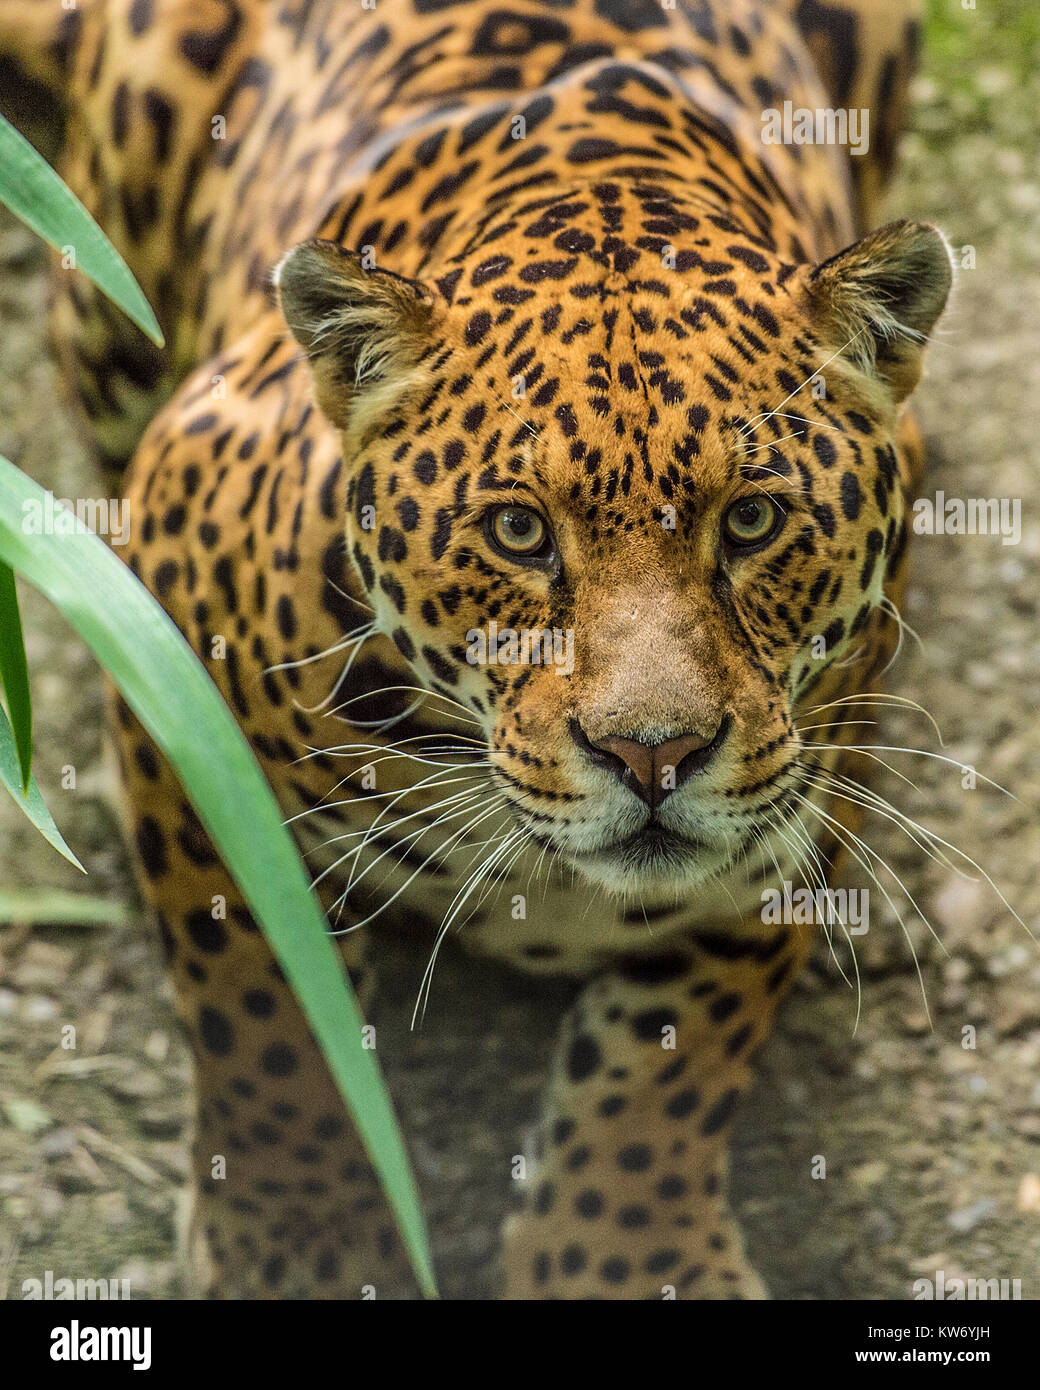 jaguar panthera onca Stock Photo